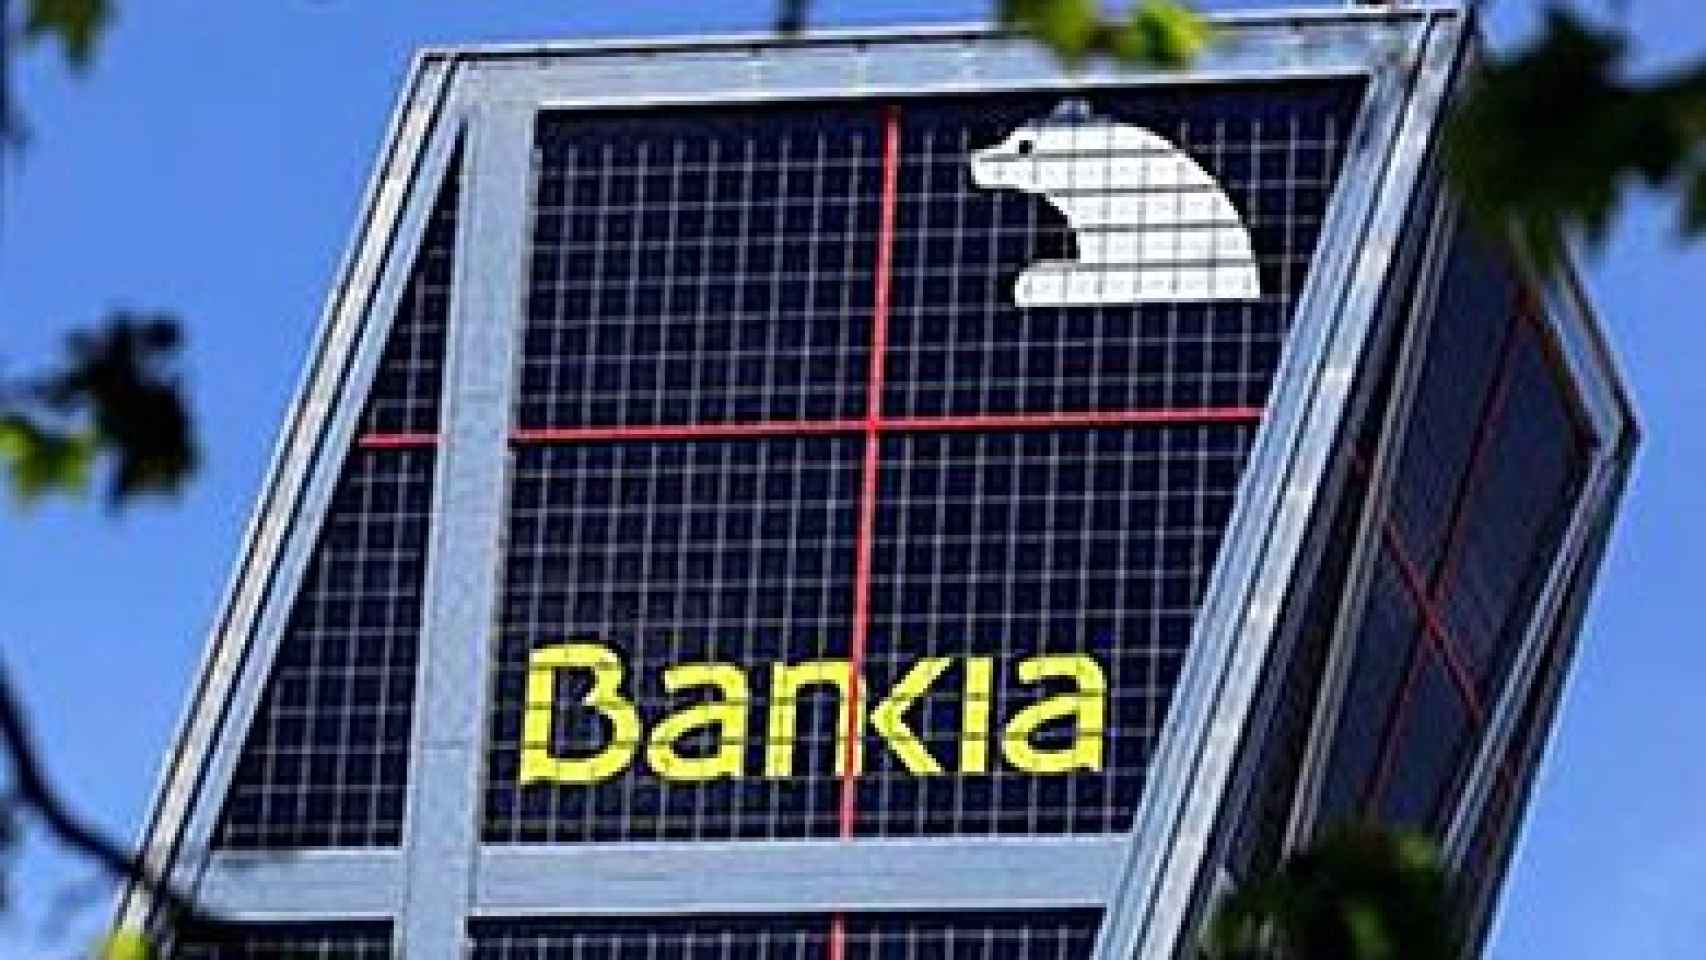 Sede operativa de Bankia, en una de las 'Torres Kio' de Madrid